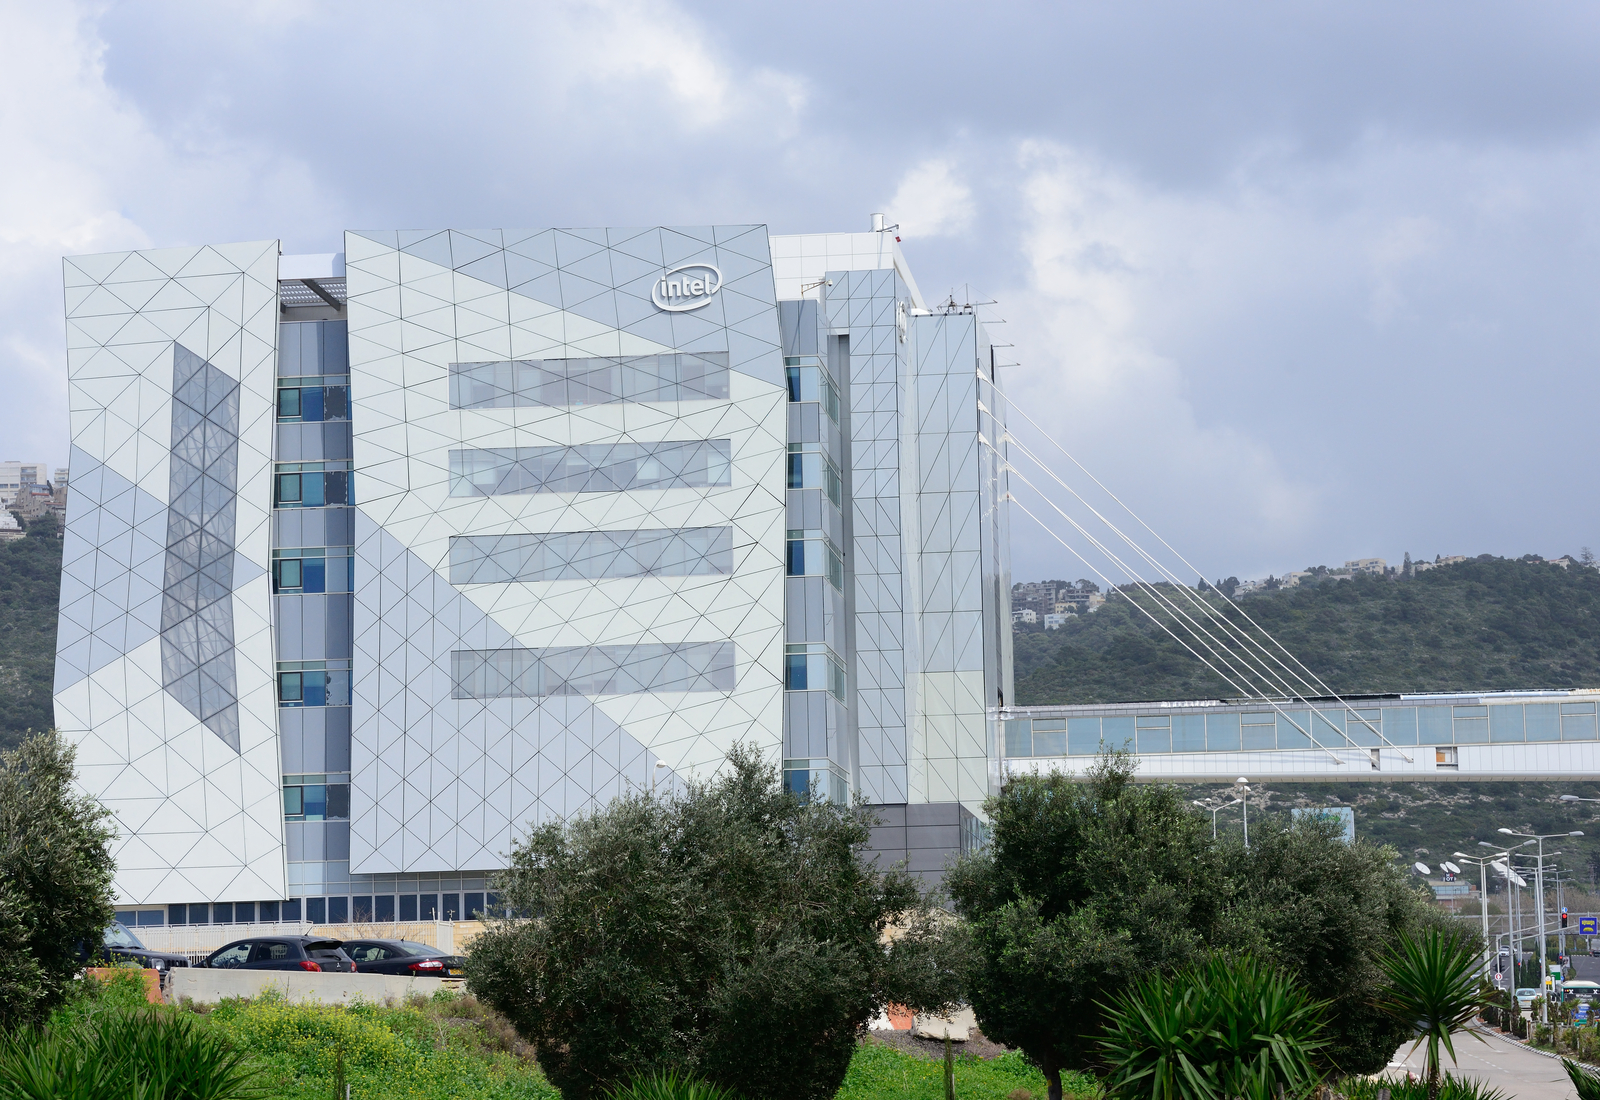 Intel’s Israeli headquarters in Haifa. Photo by Shutterstock